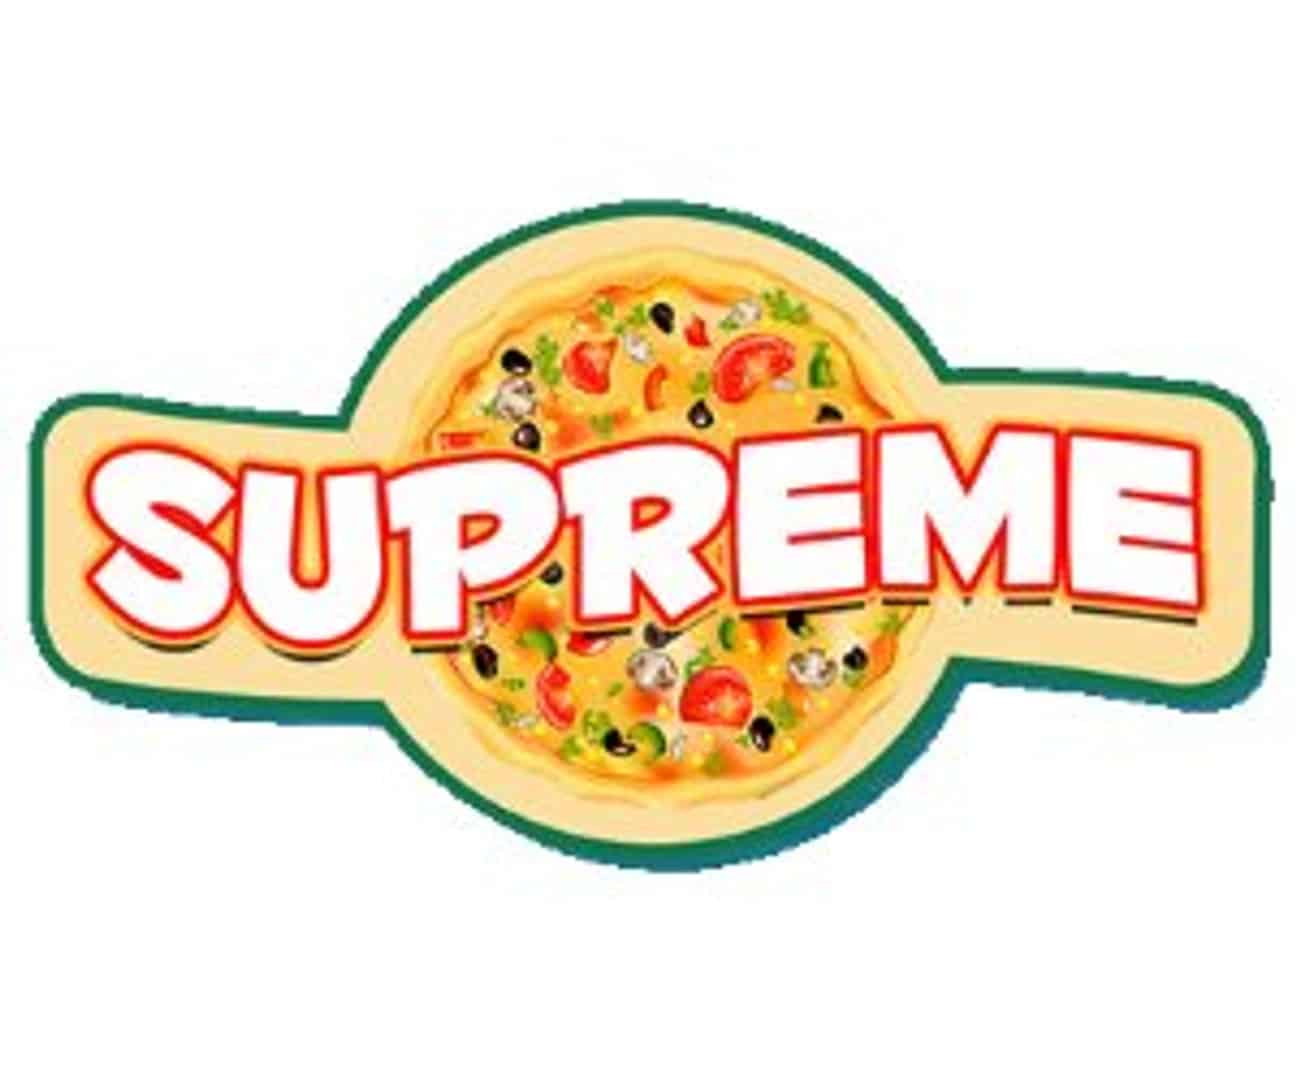 Supreme: Pizza Empire